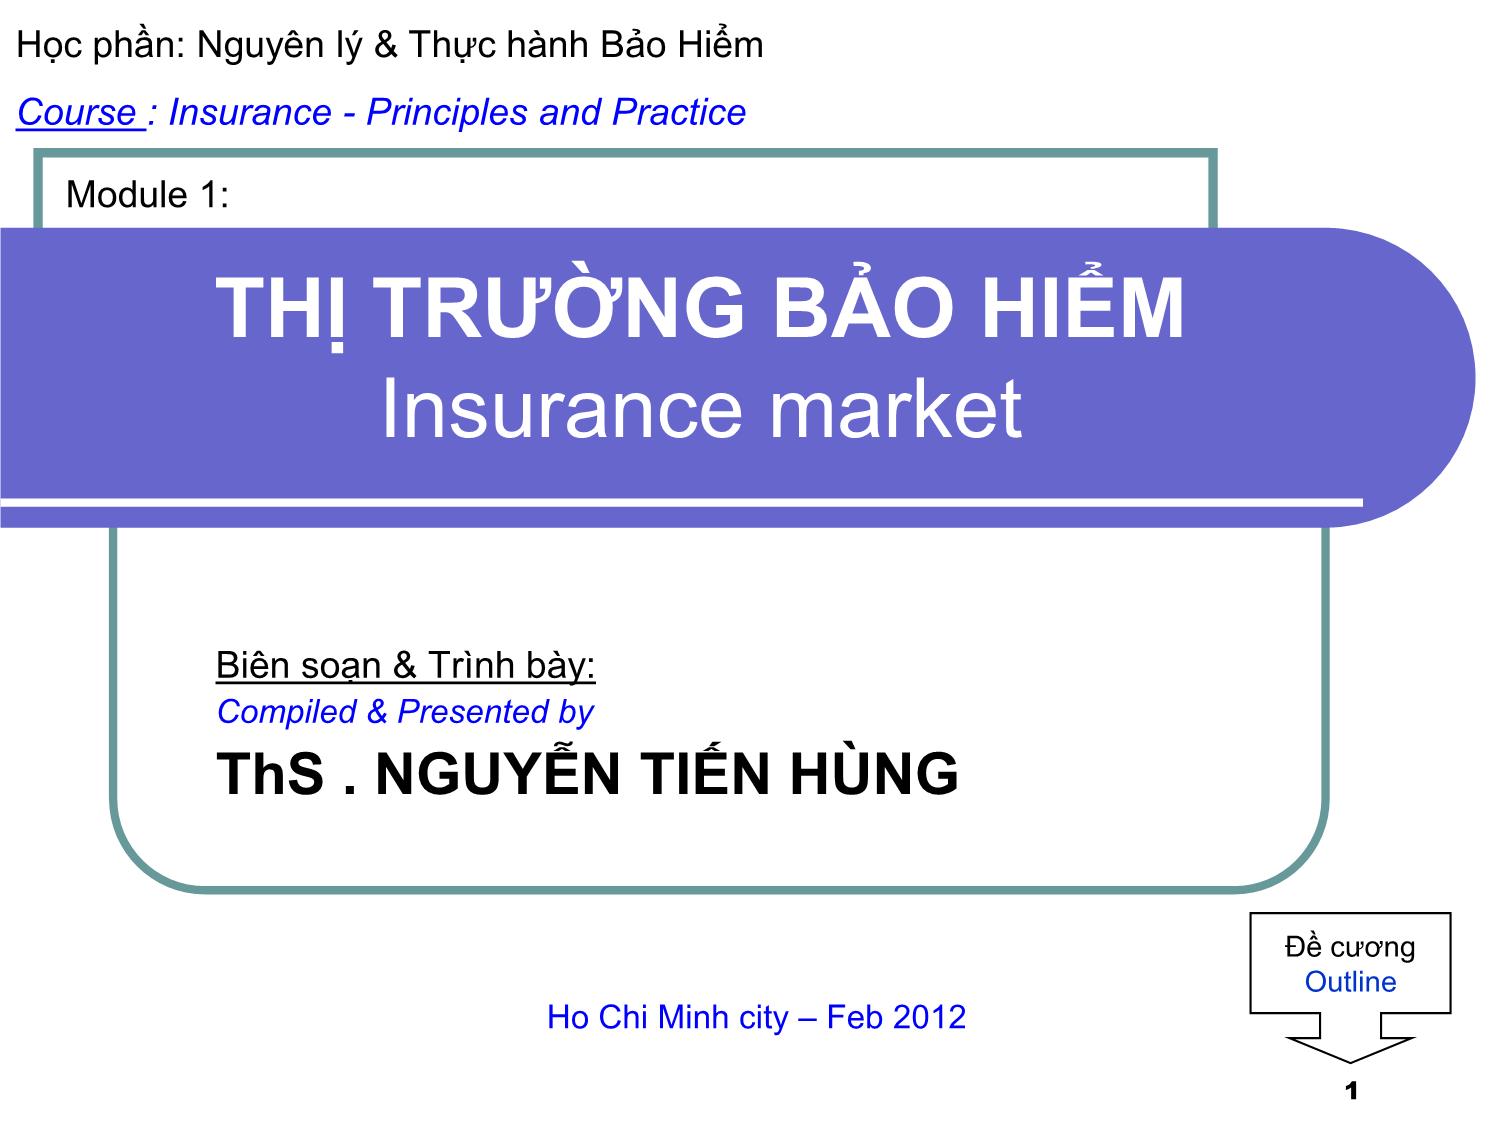 Bài giảng Thị trường bảo hiểm - Module 1 - Nguyễn Tiến Hùng trang 1